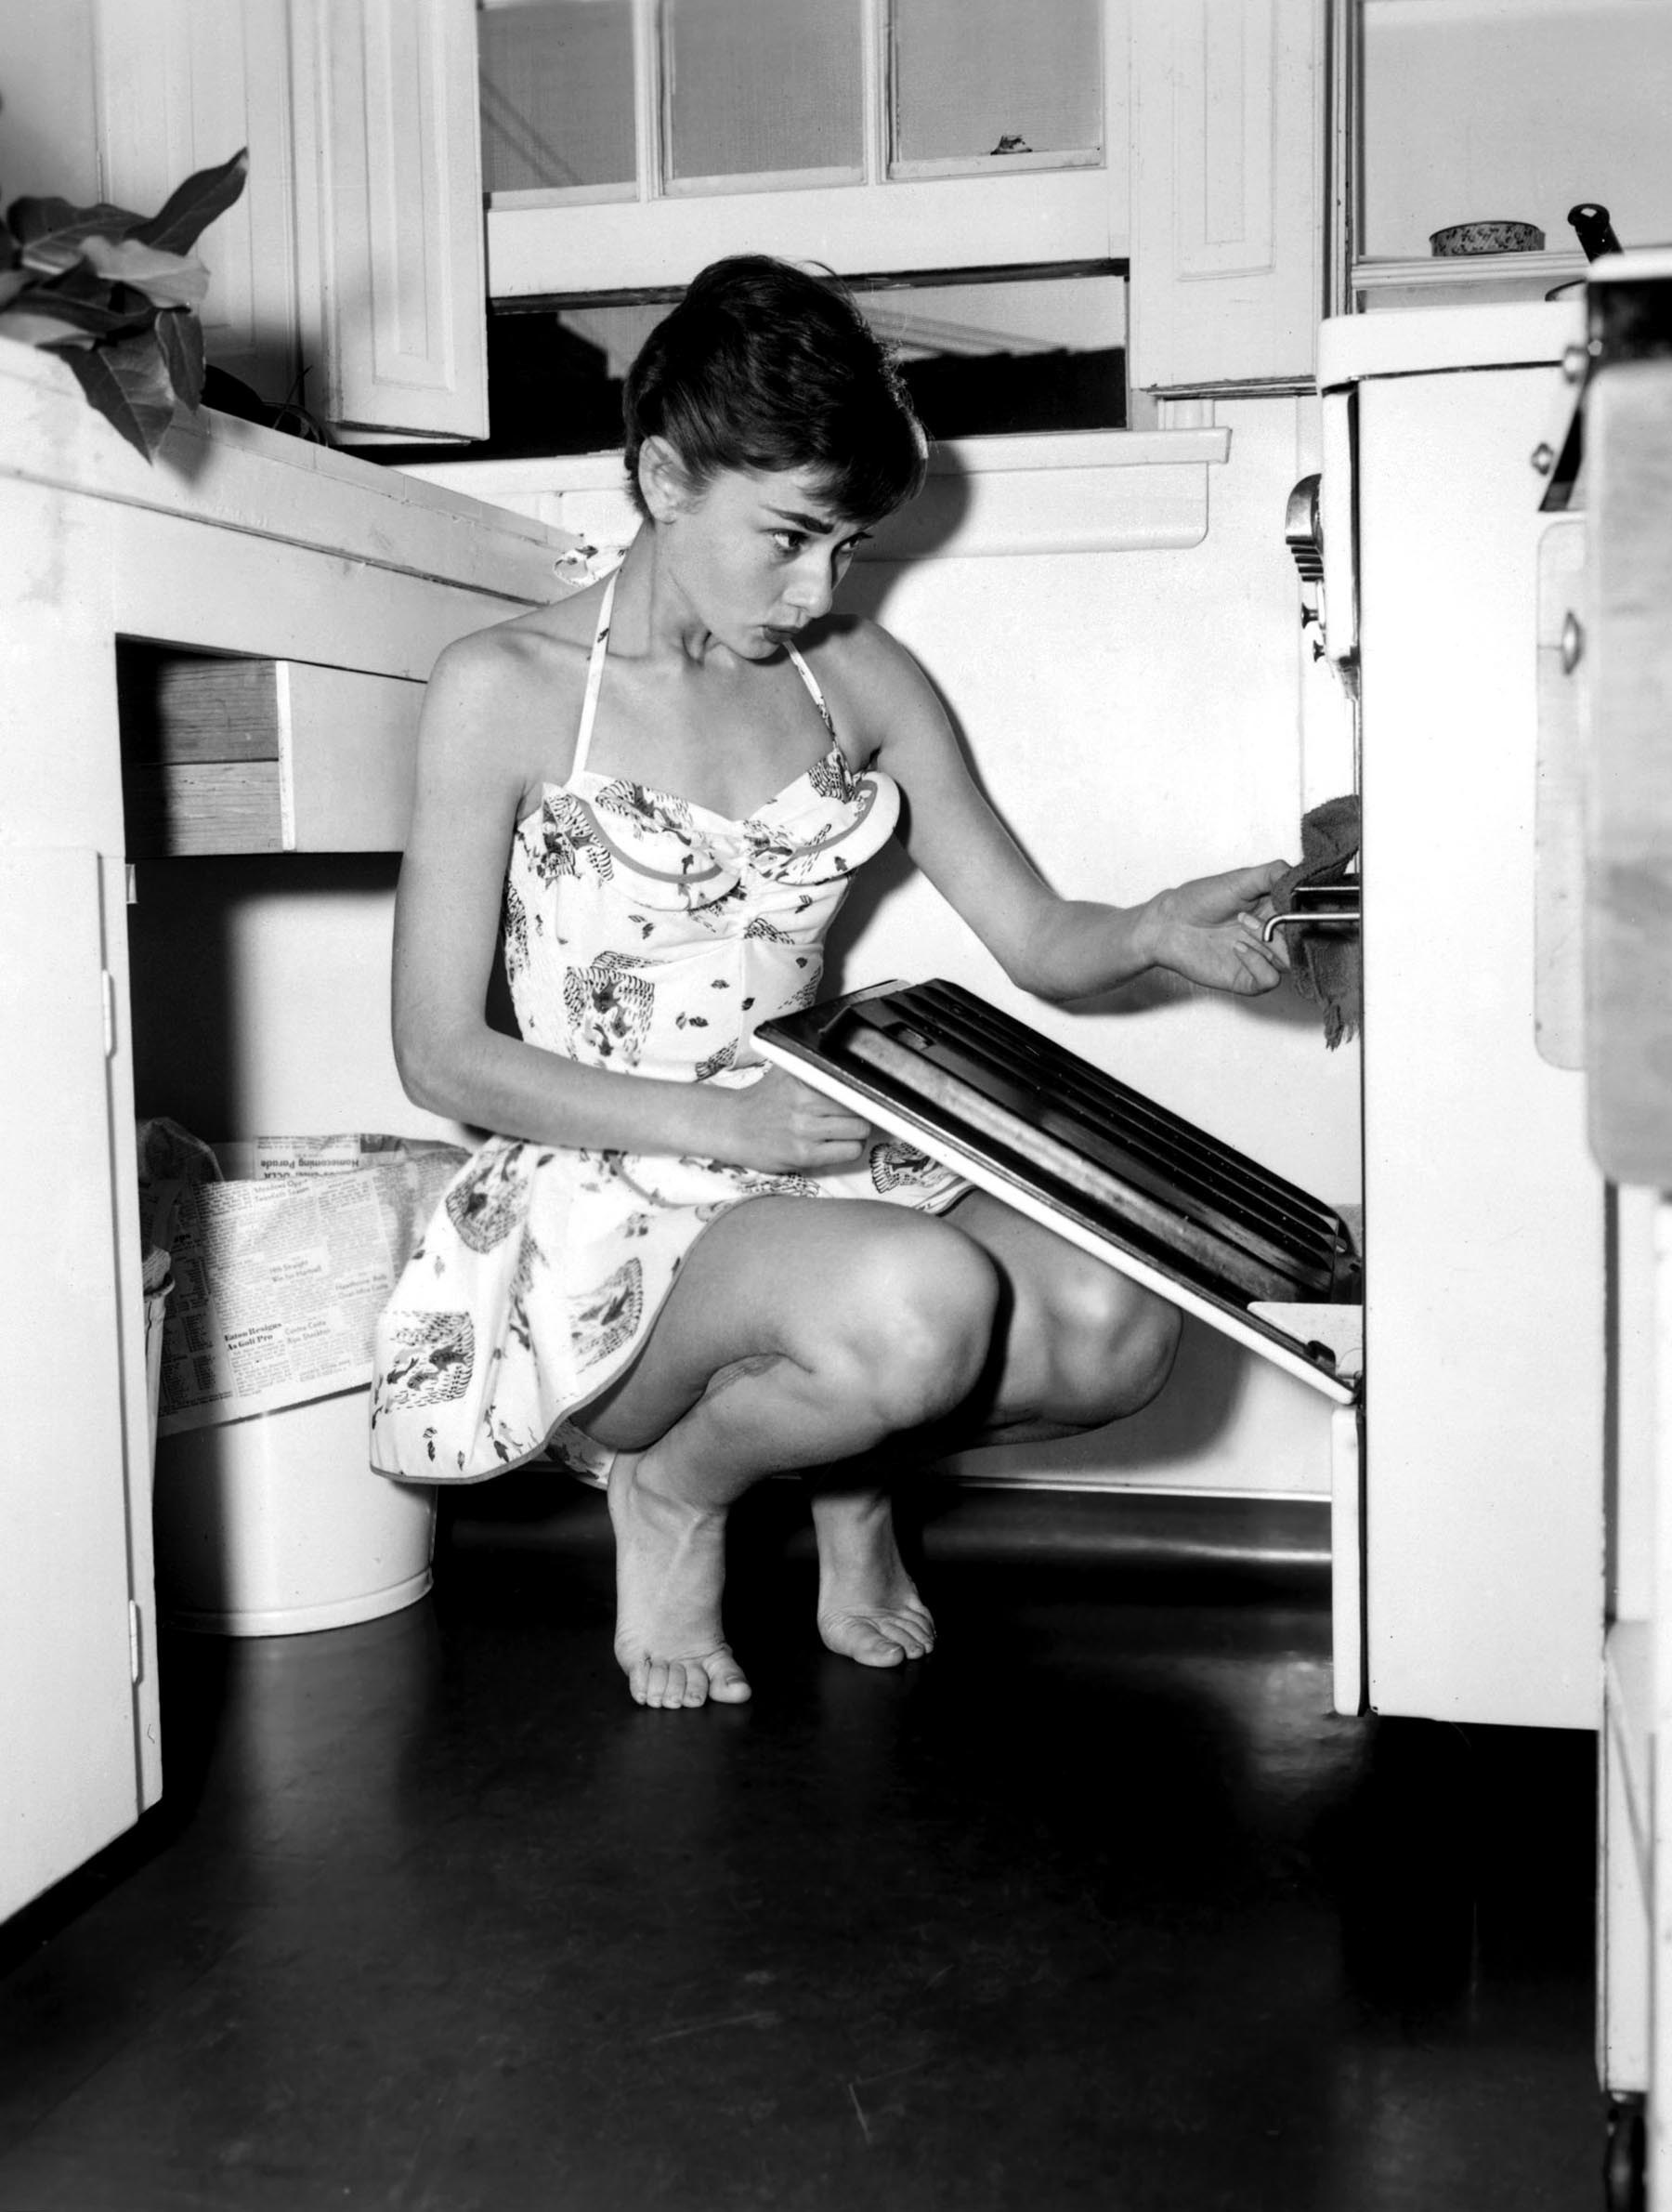 Audrey Hepburn using an oven